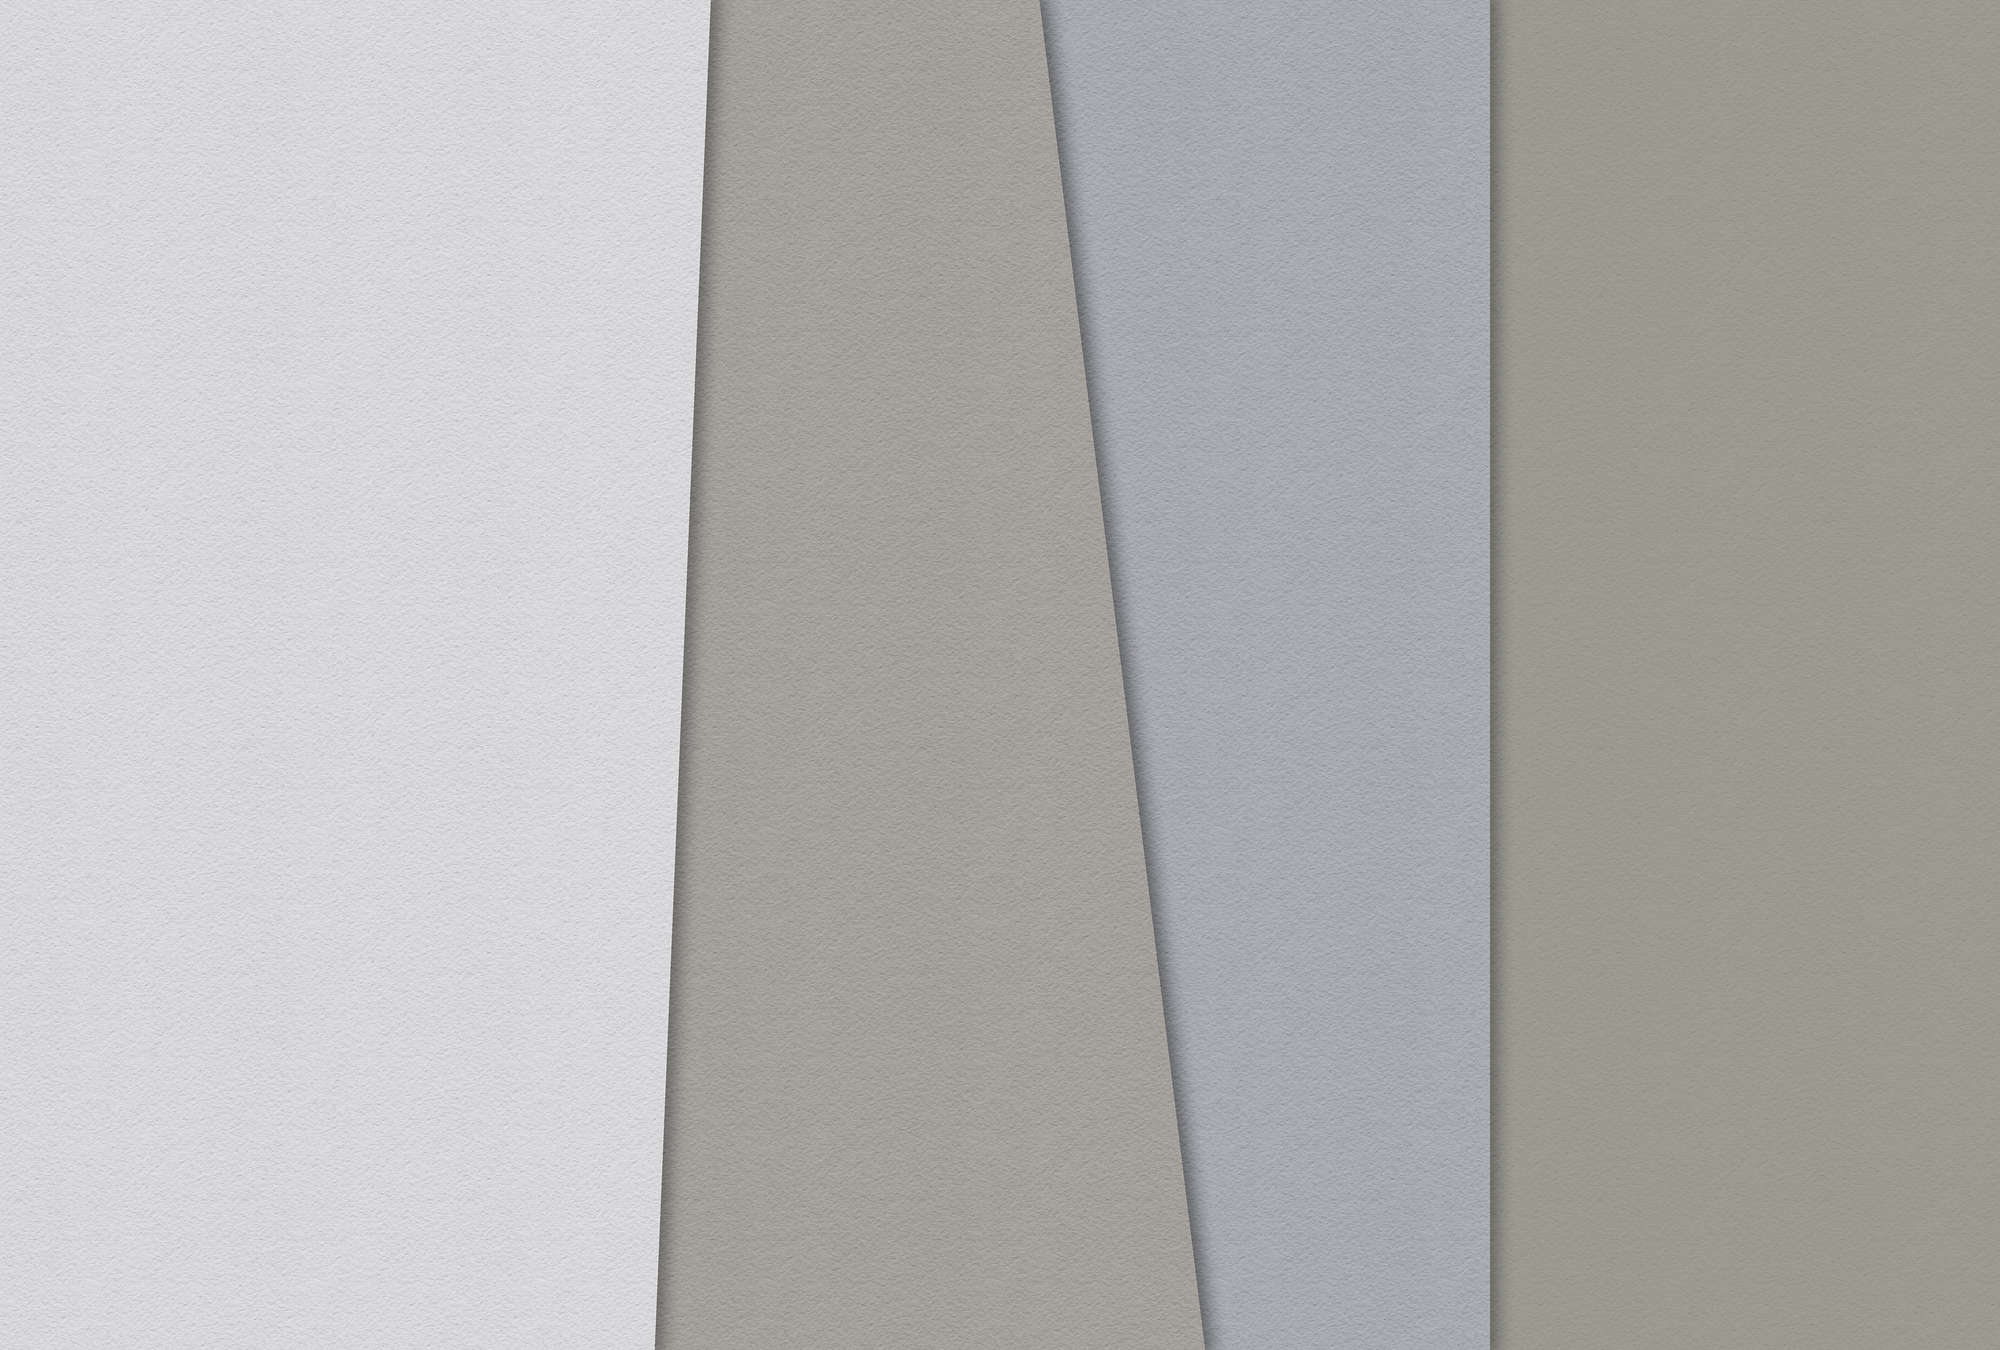             Papel estratificado 4 - Mural minimalista en estructura de papel hecho a mano - Azul, Crema | Estructura no tejida
        